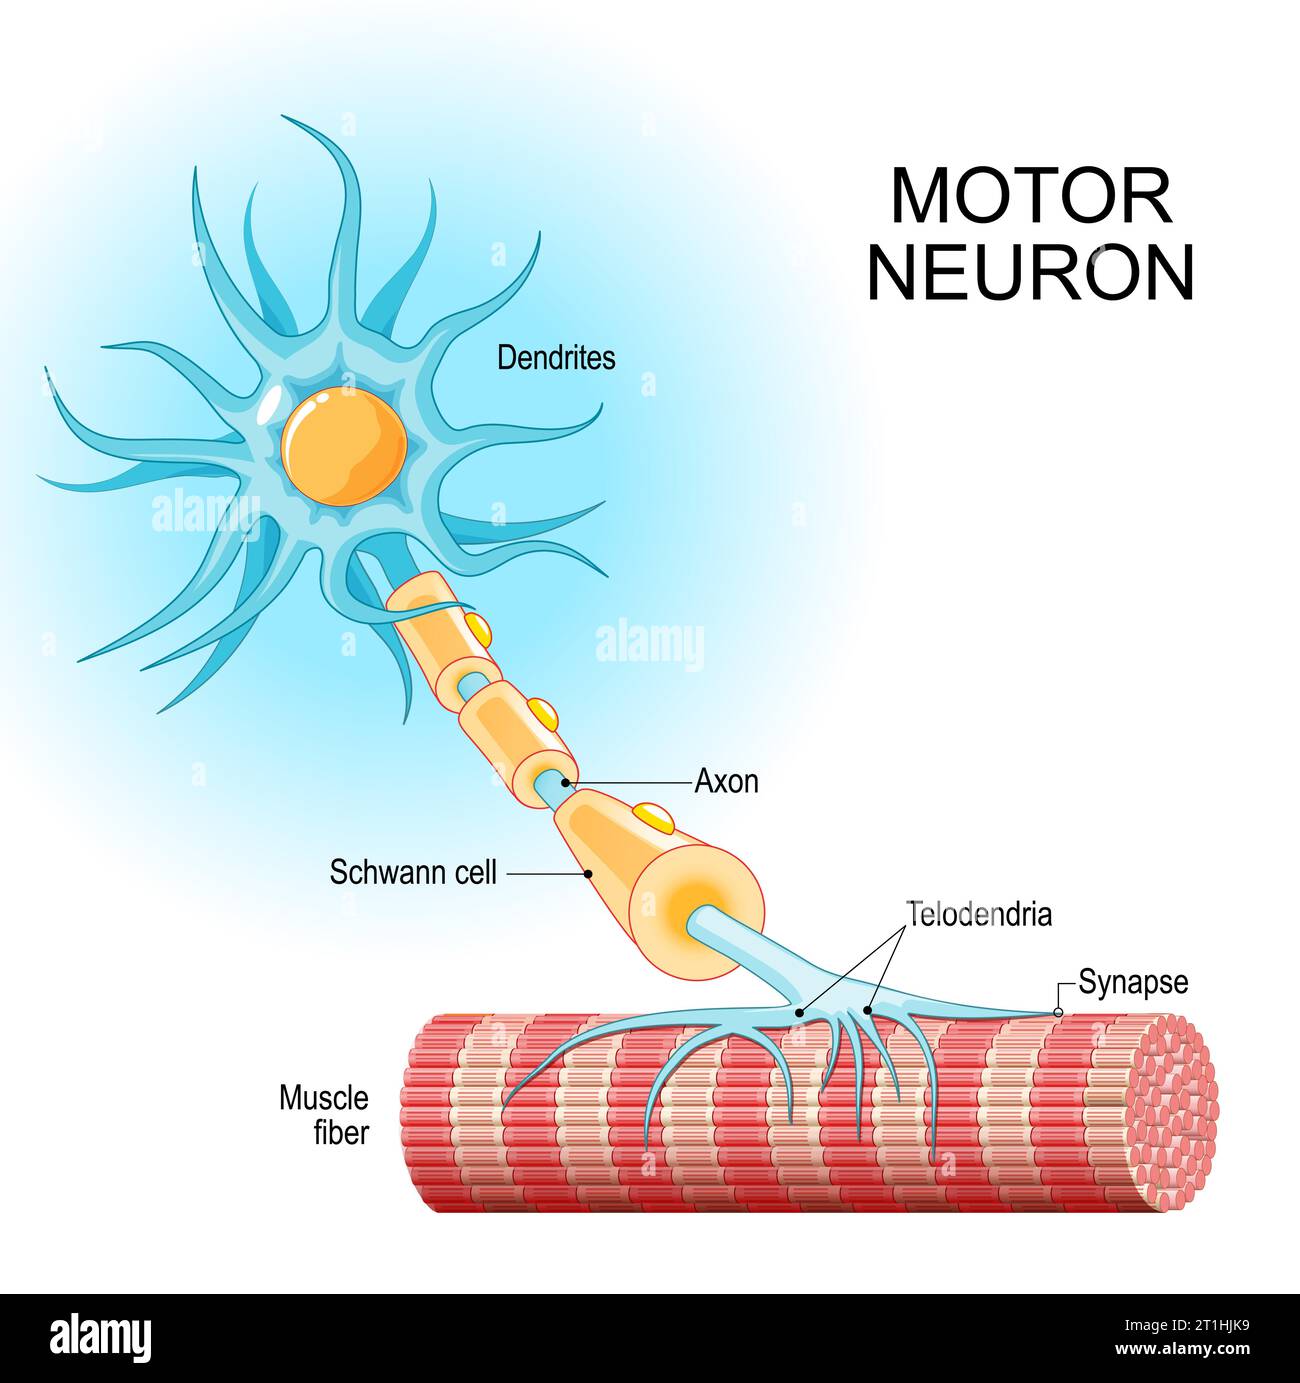 motoneurone. Structure et anatomie d'un neurone efférent. Gros plan d'une fibre musculaire, et motoneuron avec dendrites, Synapse, Telodendria, Axon, Schwa Illustration de Vecteur